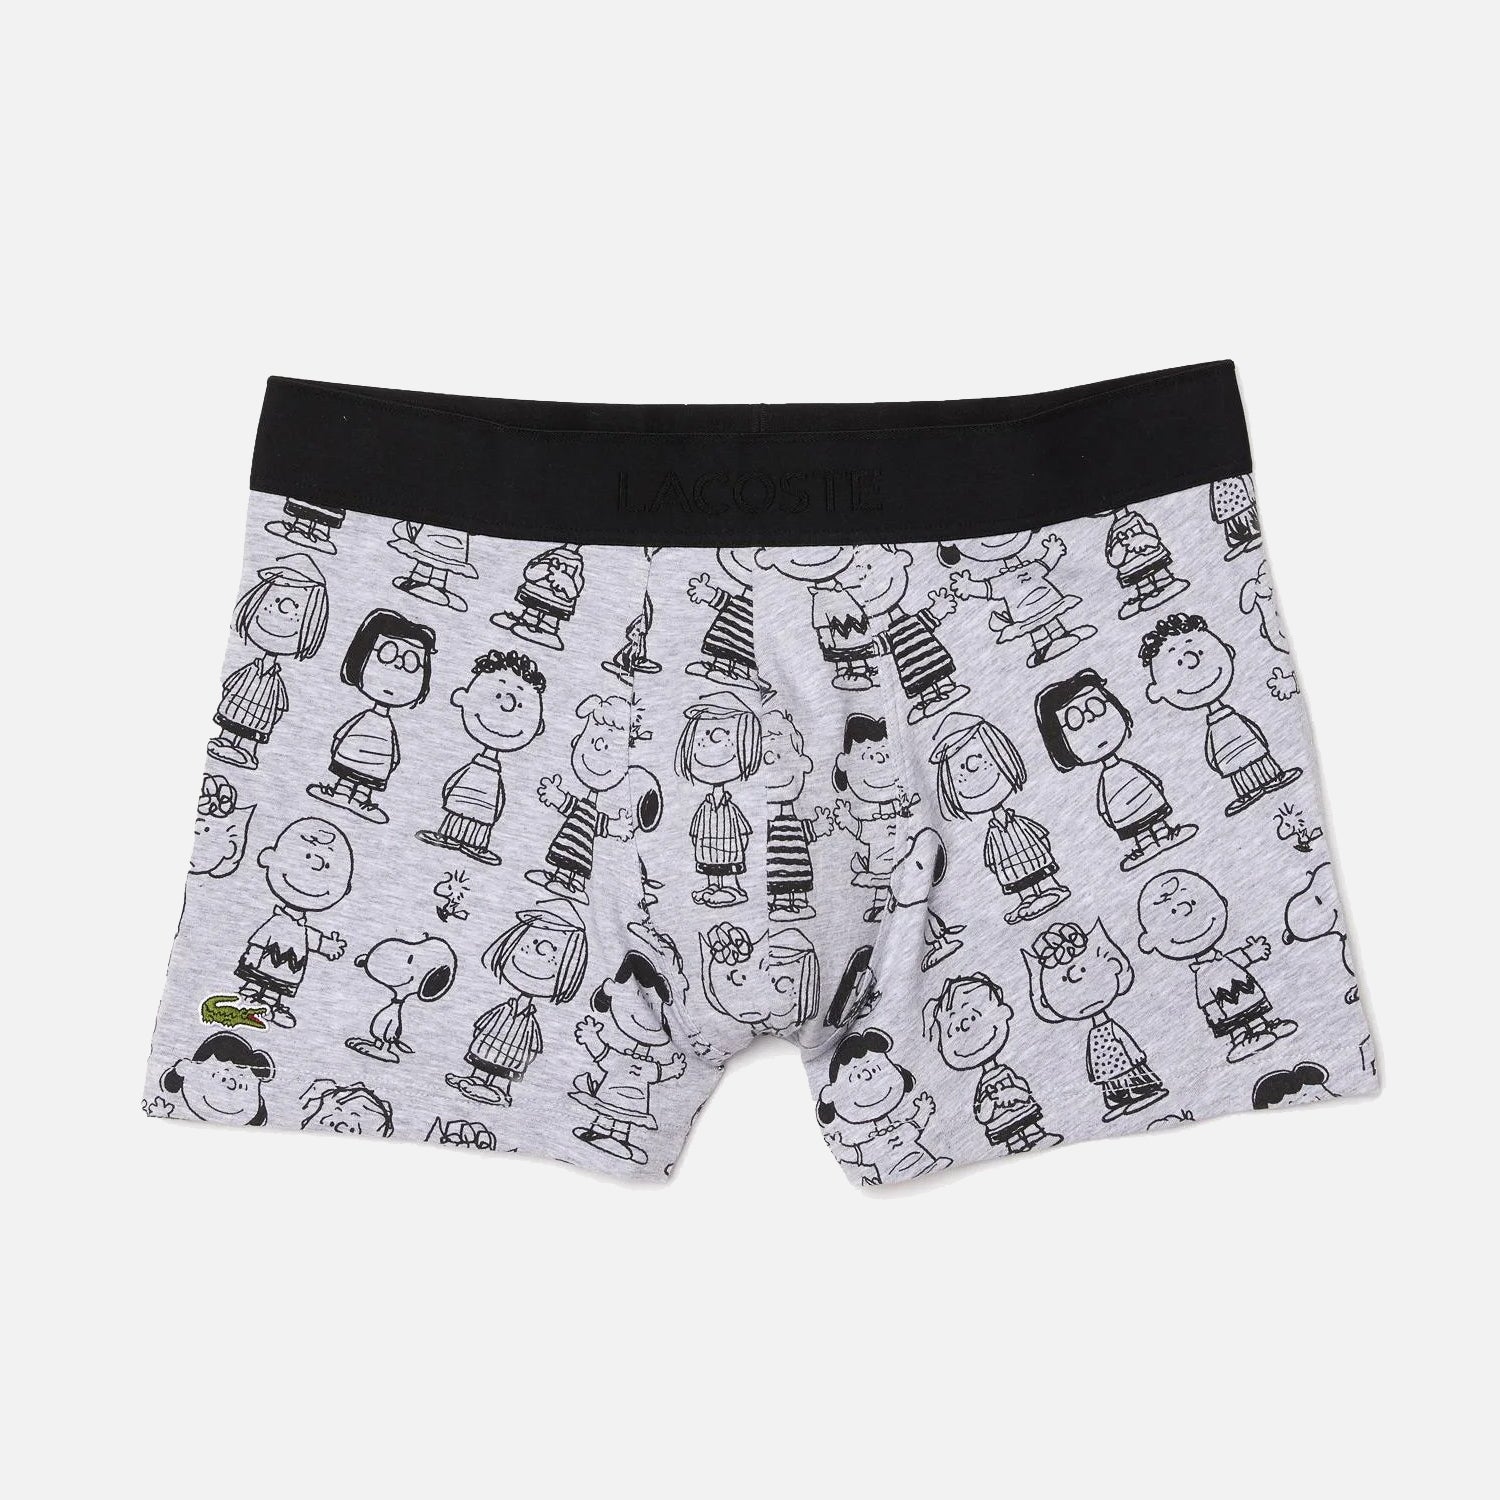 Men's Lacoste x Peanuts Boxer Shorts x 1 Pack